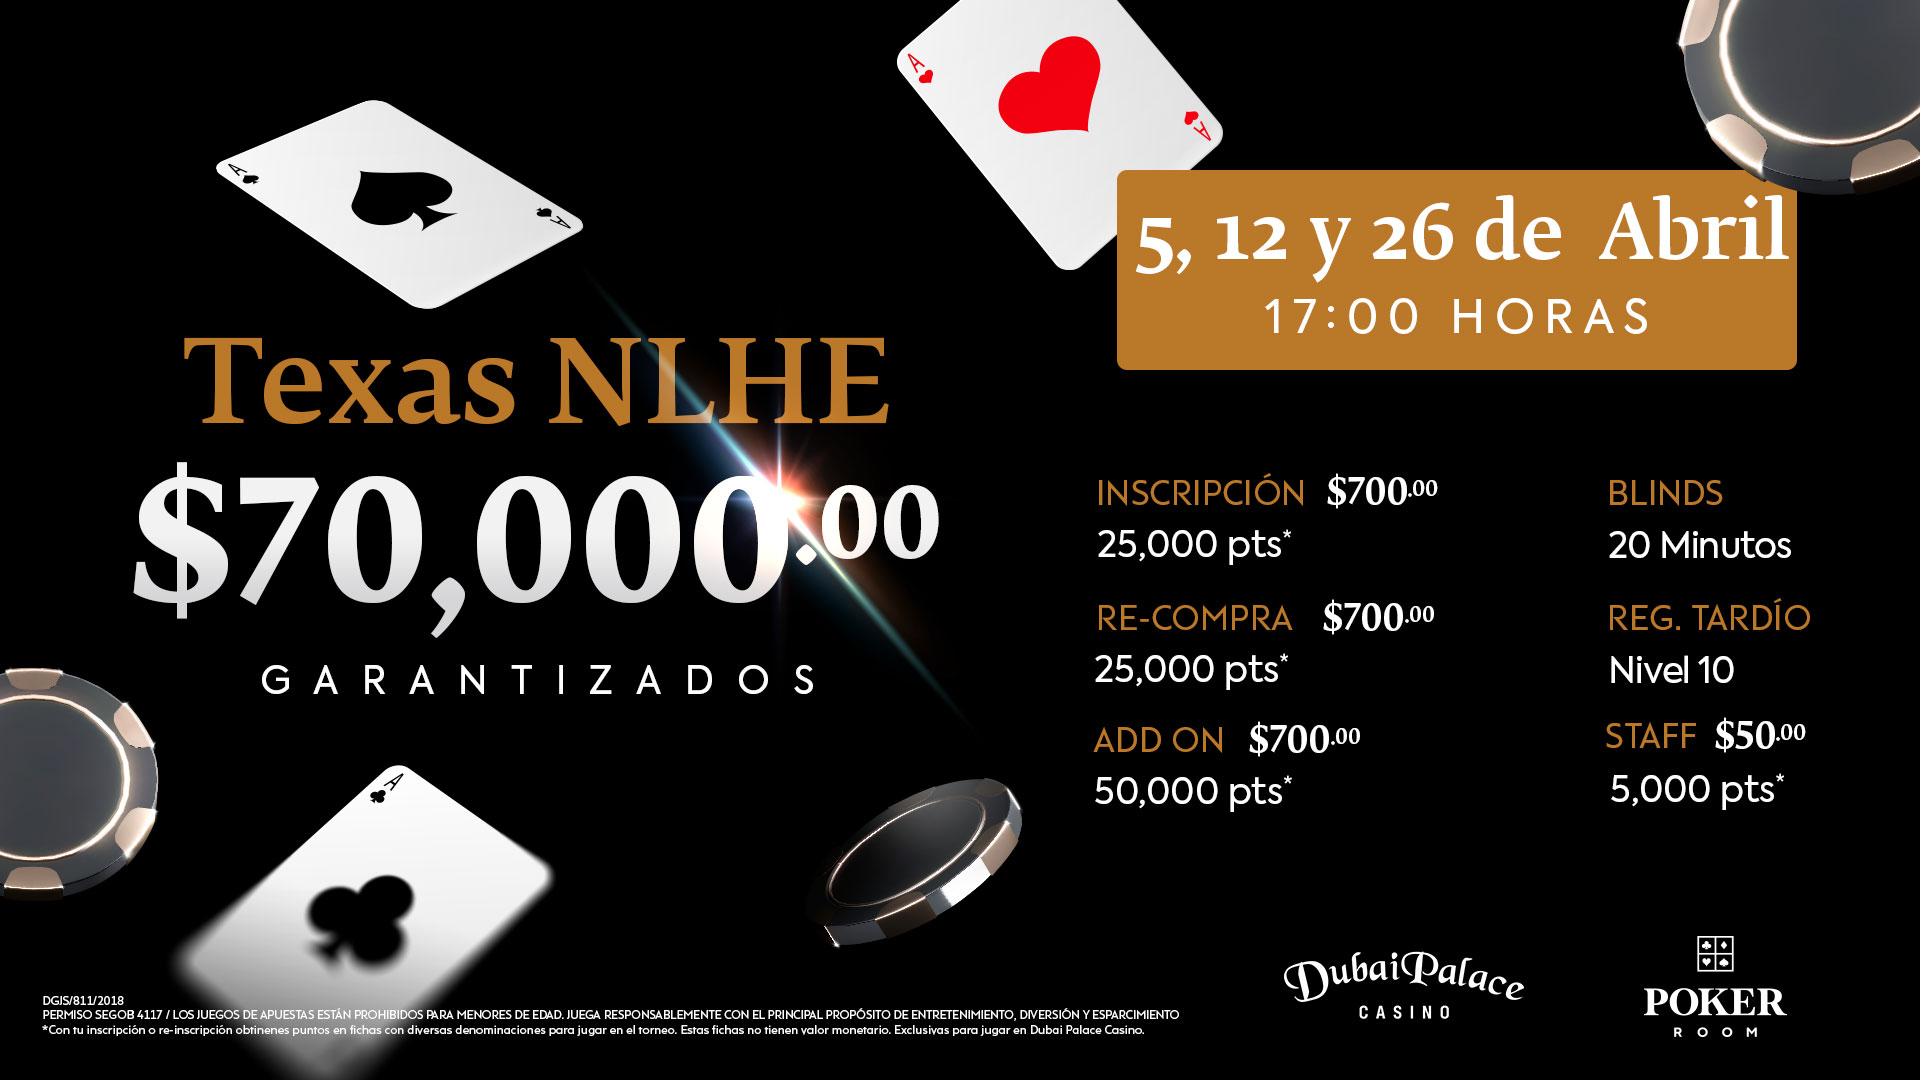 Torneo Texas NLHE con $70,000 pesos garantizados